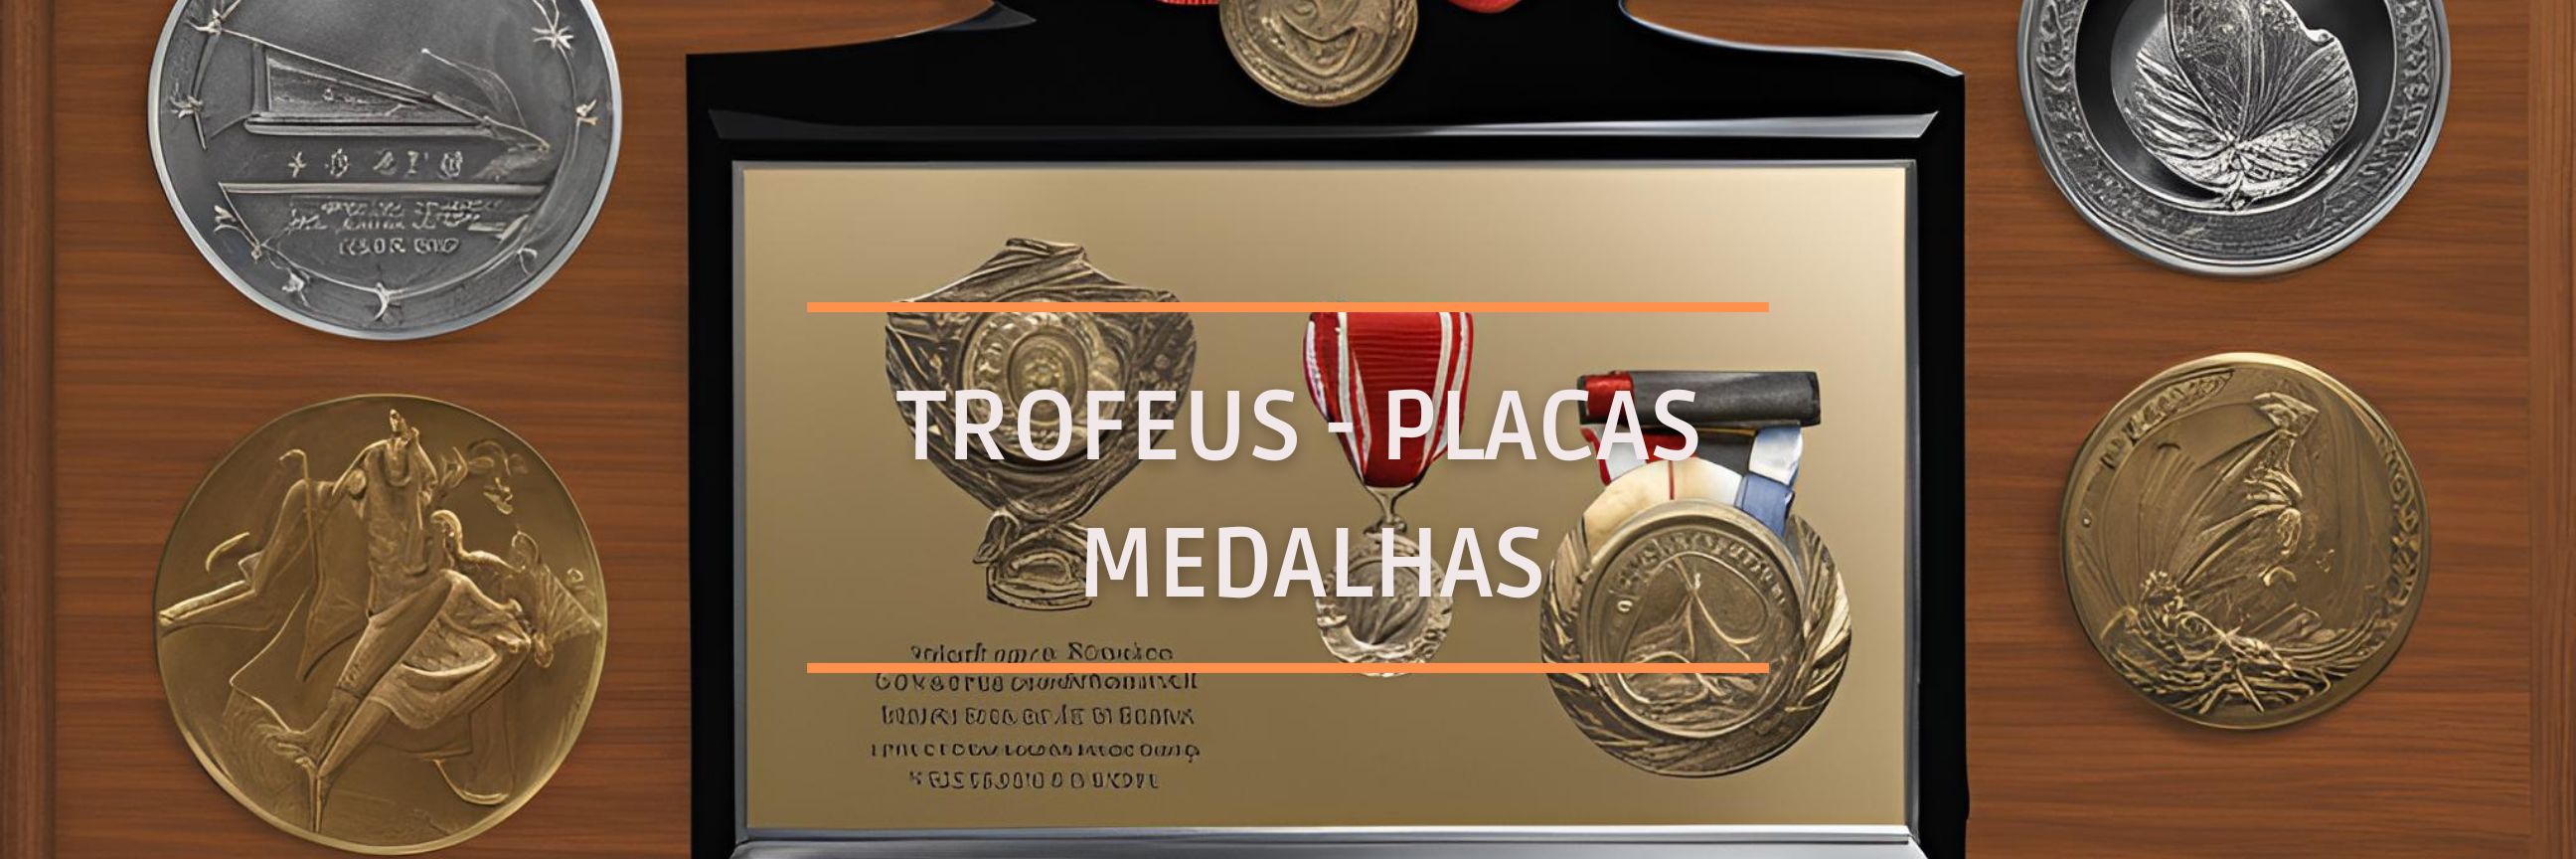 Trofus - Placas - Medalhas